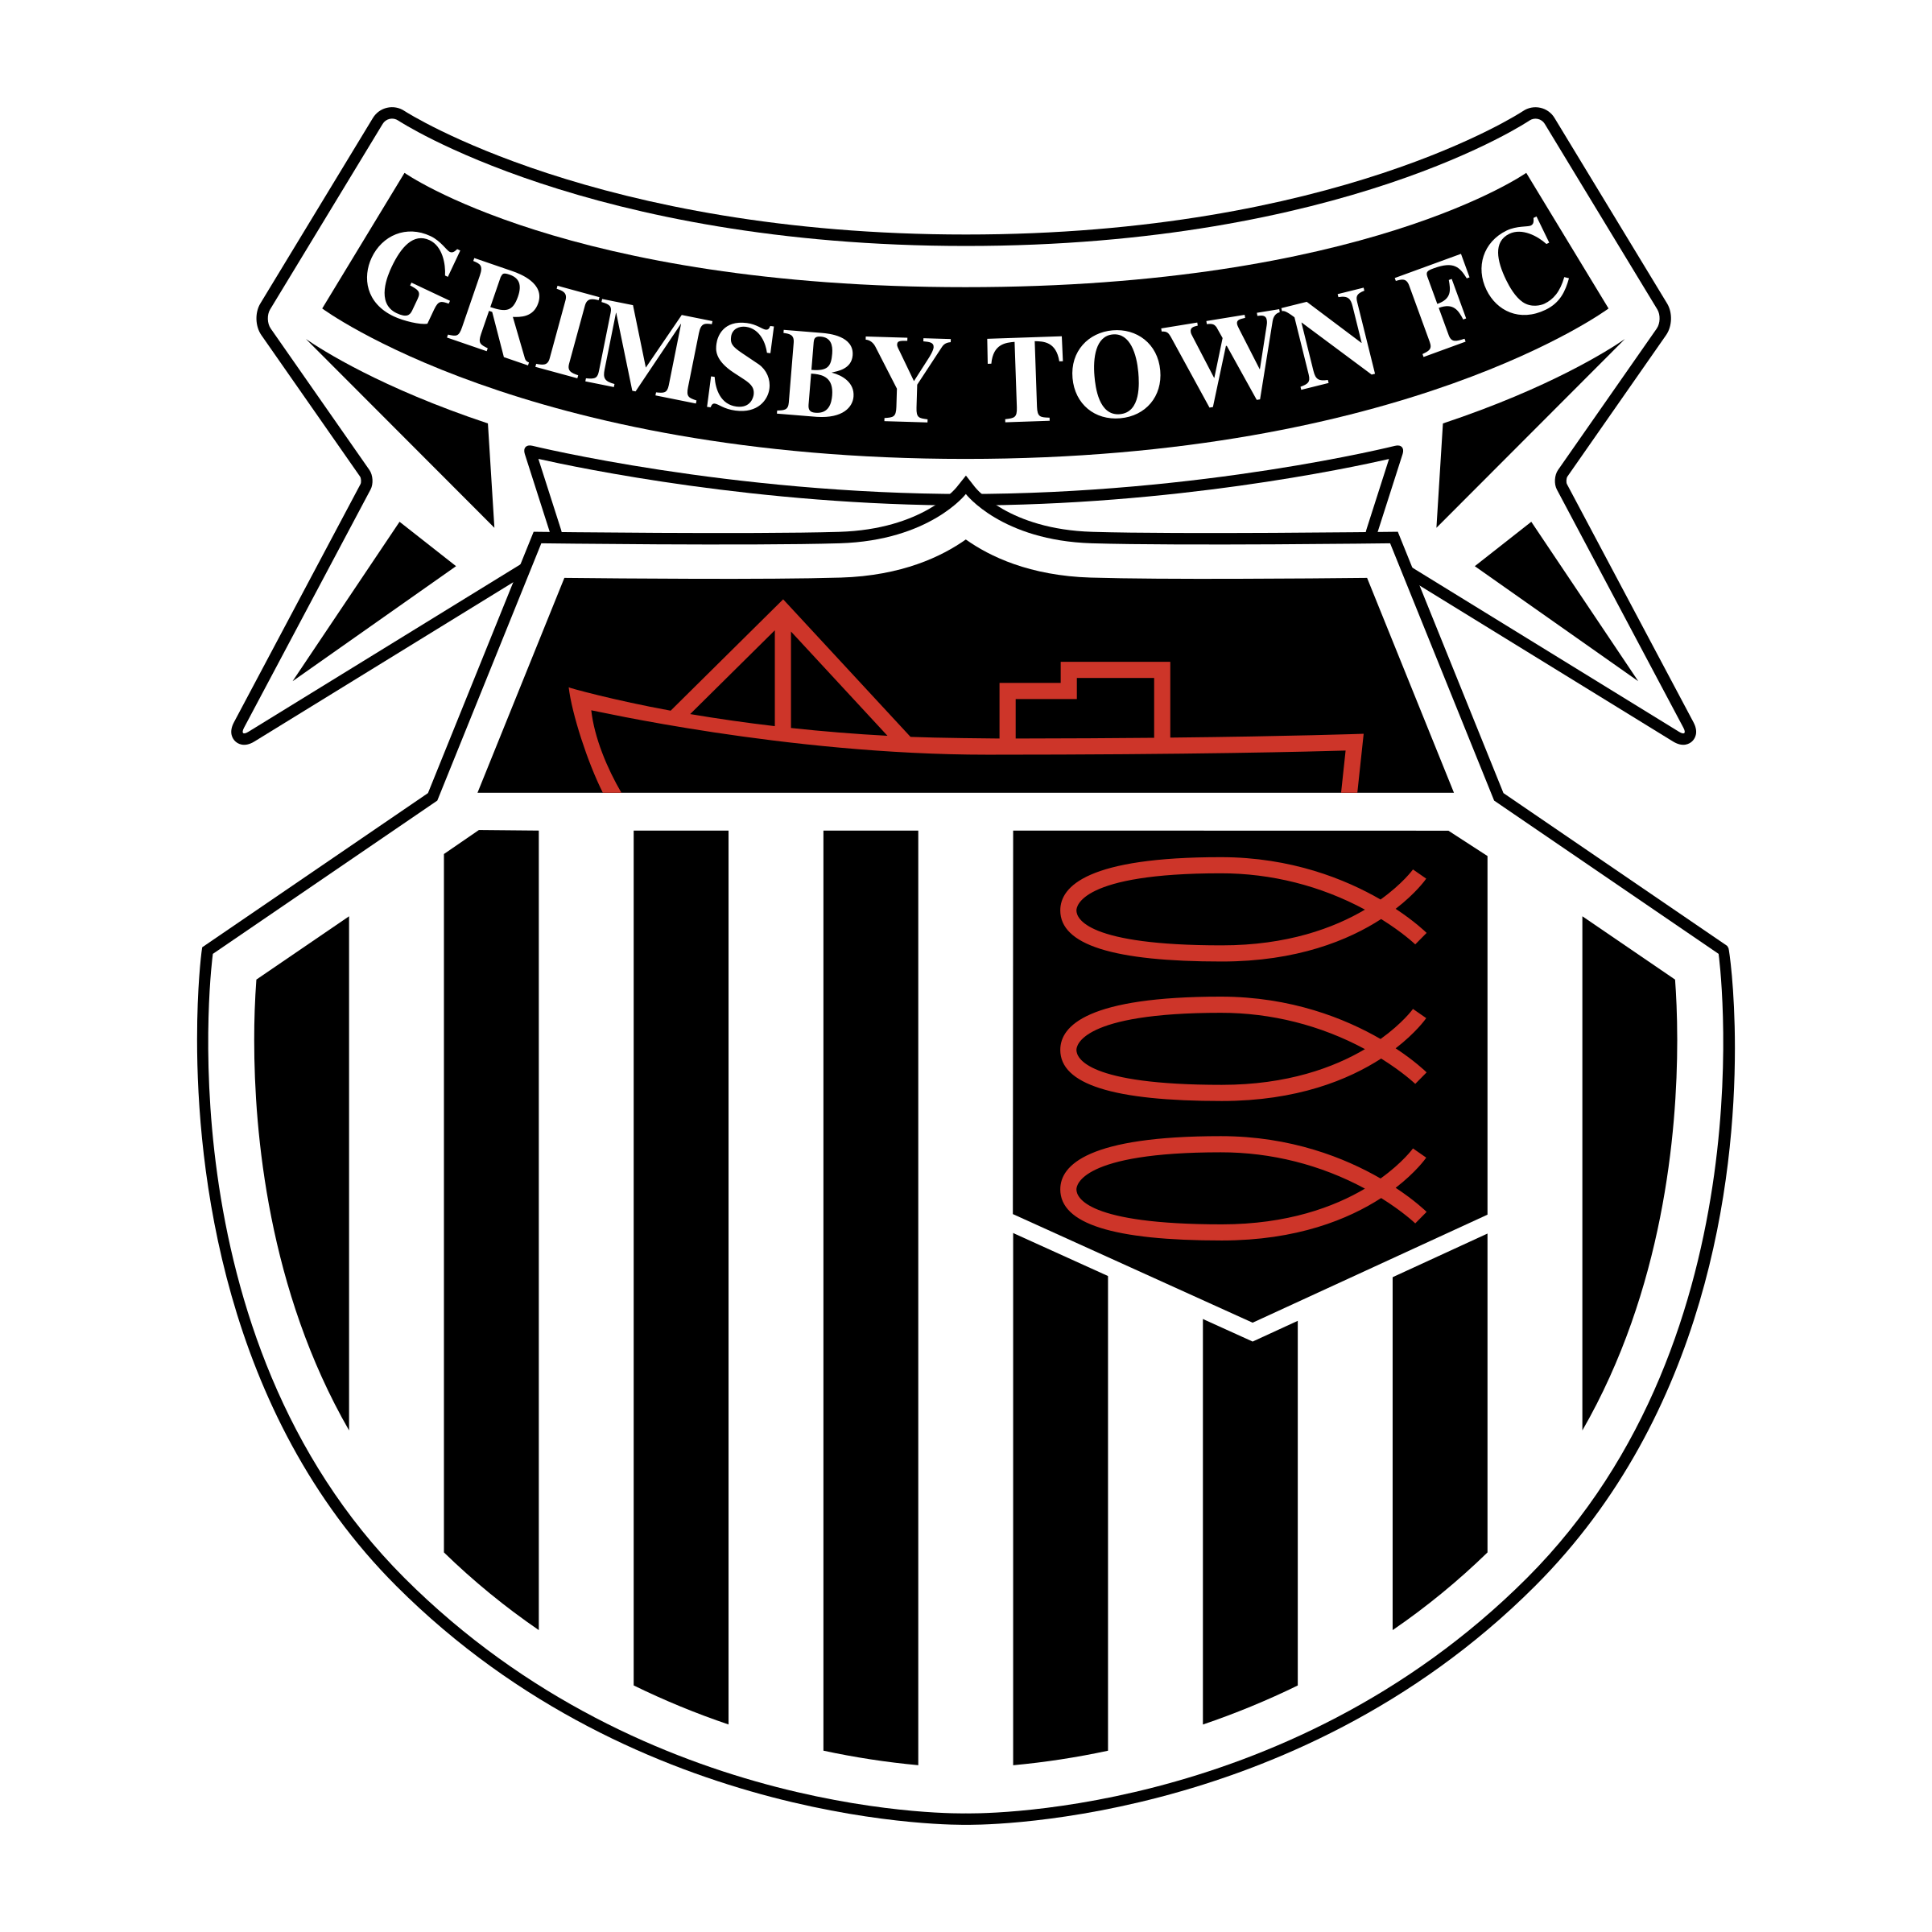 Grimsby logo